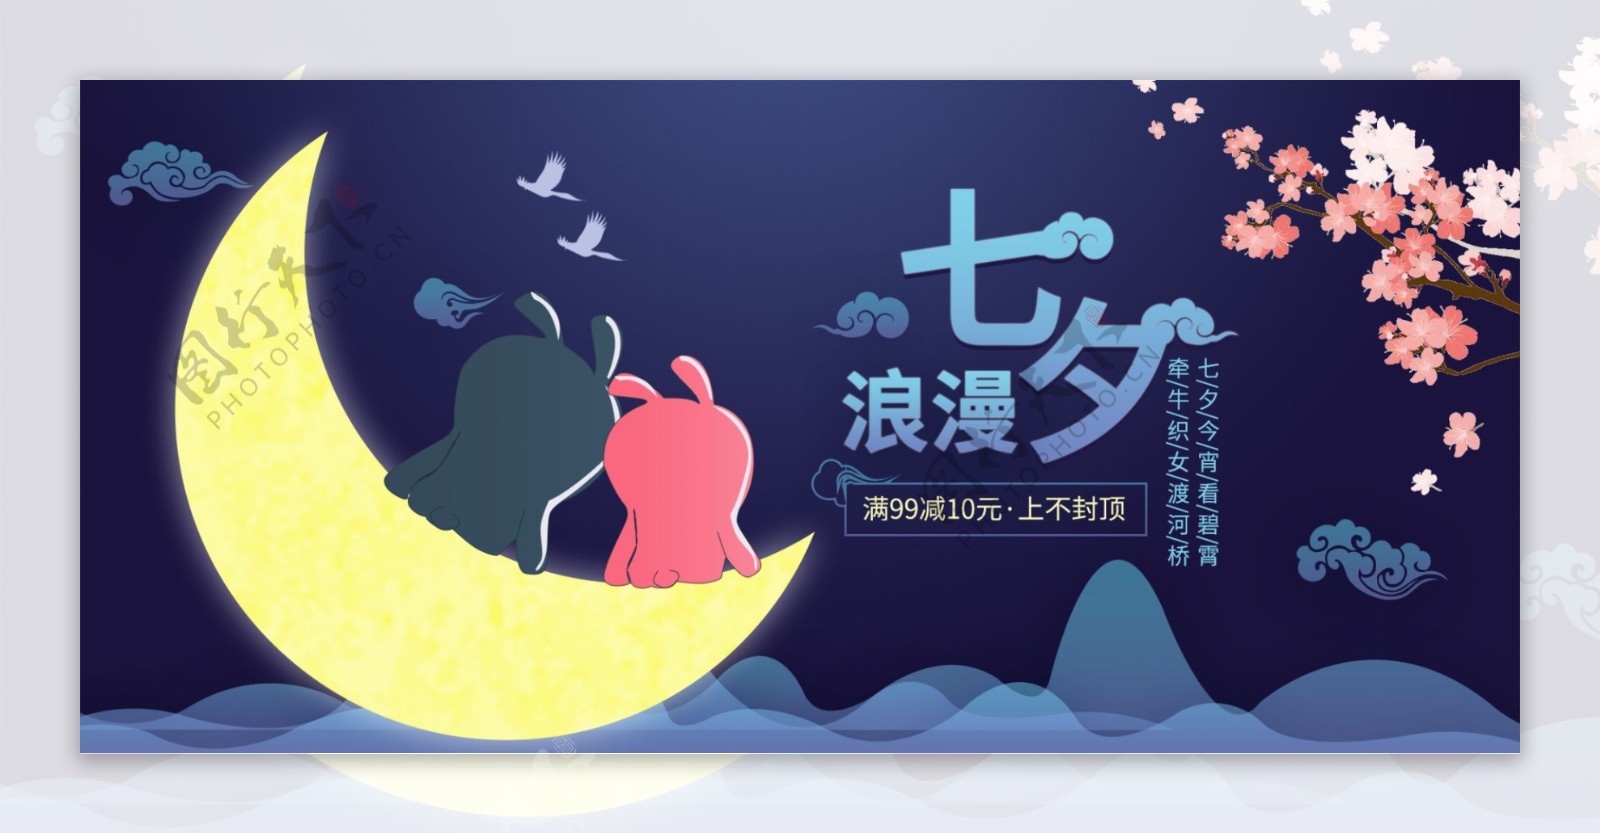 七夕情人节电商淘宝天猫海报模版促销